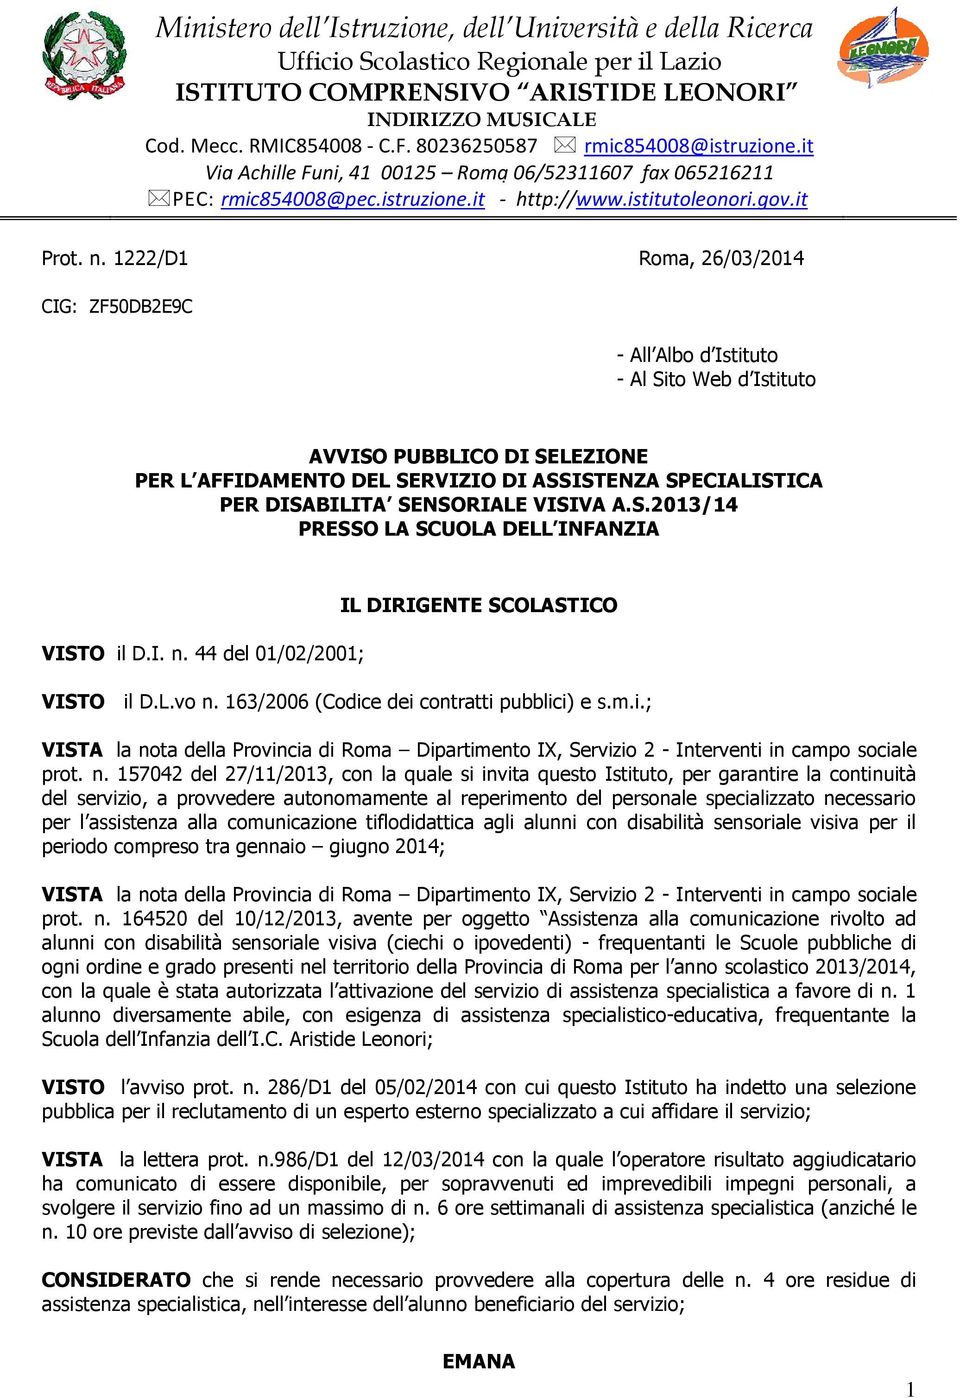 SENSORIALE VISIVA A.S.2013/14 PRESSO LA SCUOLA DELL INFANZIA VISTO il D.I. n. 44 del 01/02/2001; IL DIRIGENTE SCOLASTICO VISTO il D.L.vo n. 163/2006 (Codice dei contratti pubblici) e s.m.i.; VISTA la nota della Provincia di Roma Dipartimento IX, Servizio 2 - Interventi in campo sociale prot.